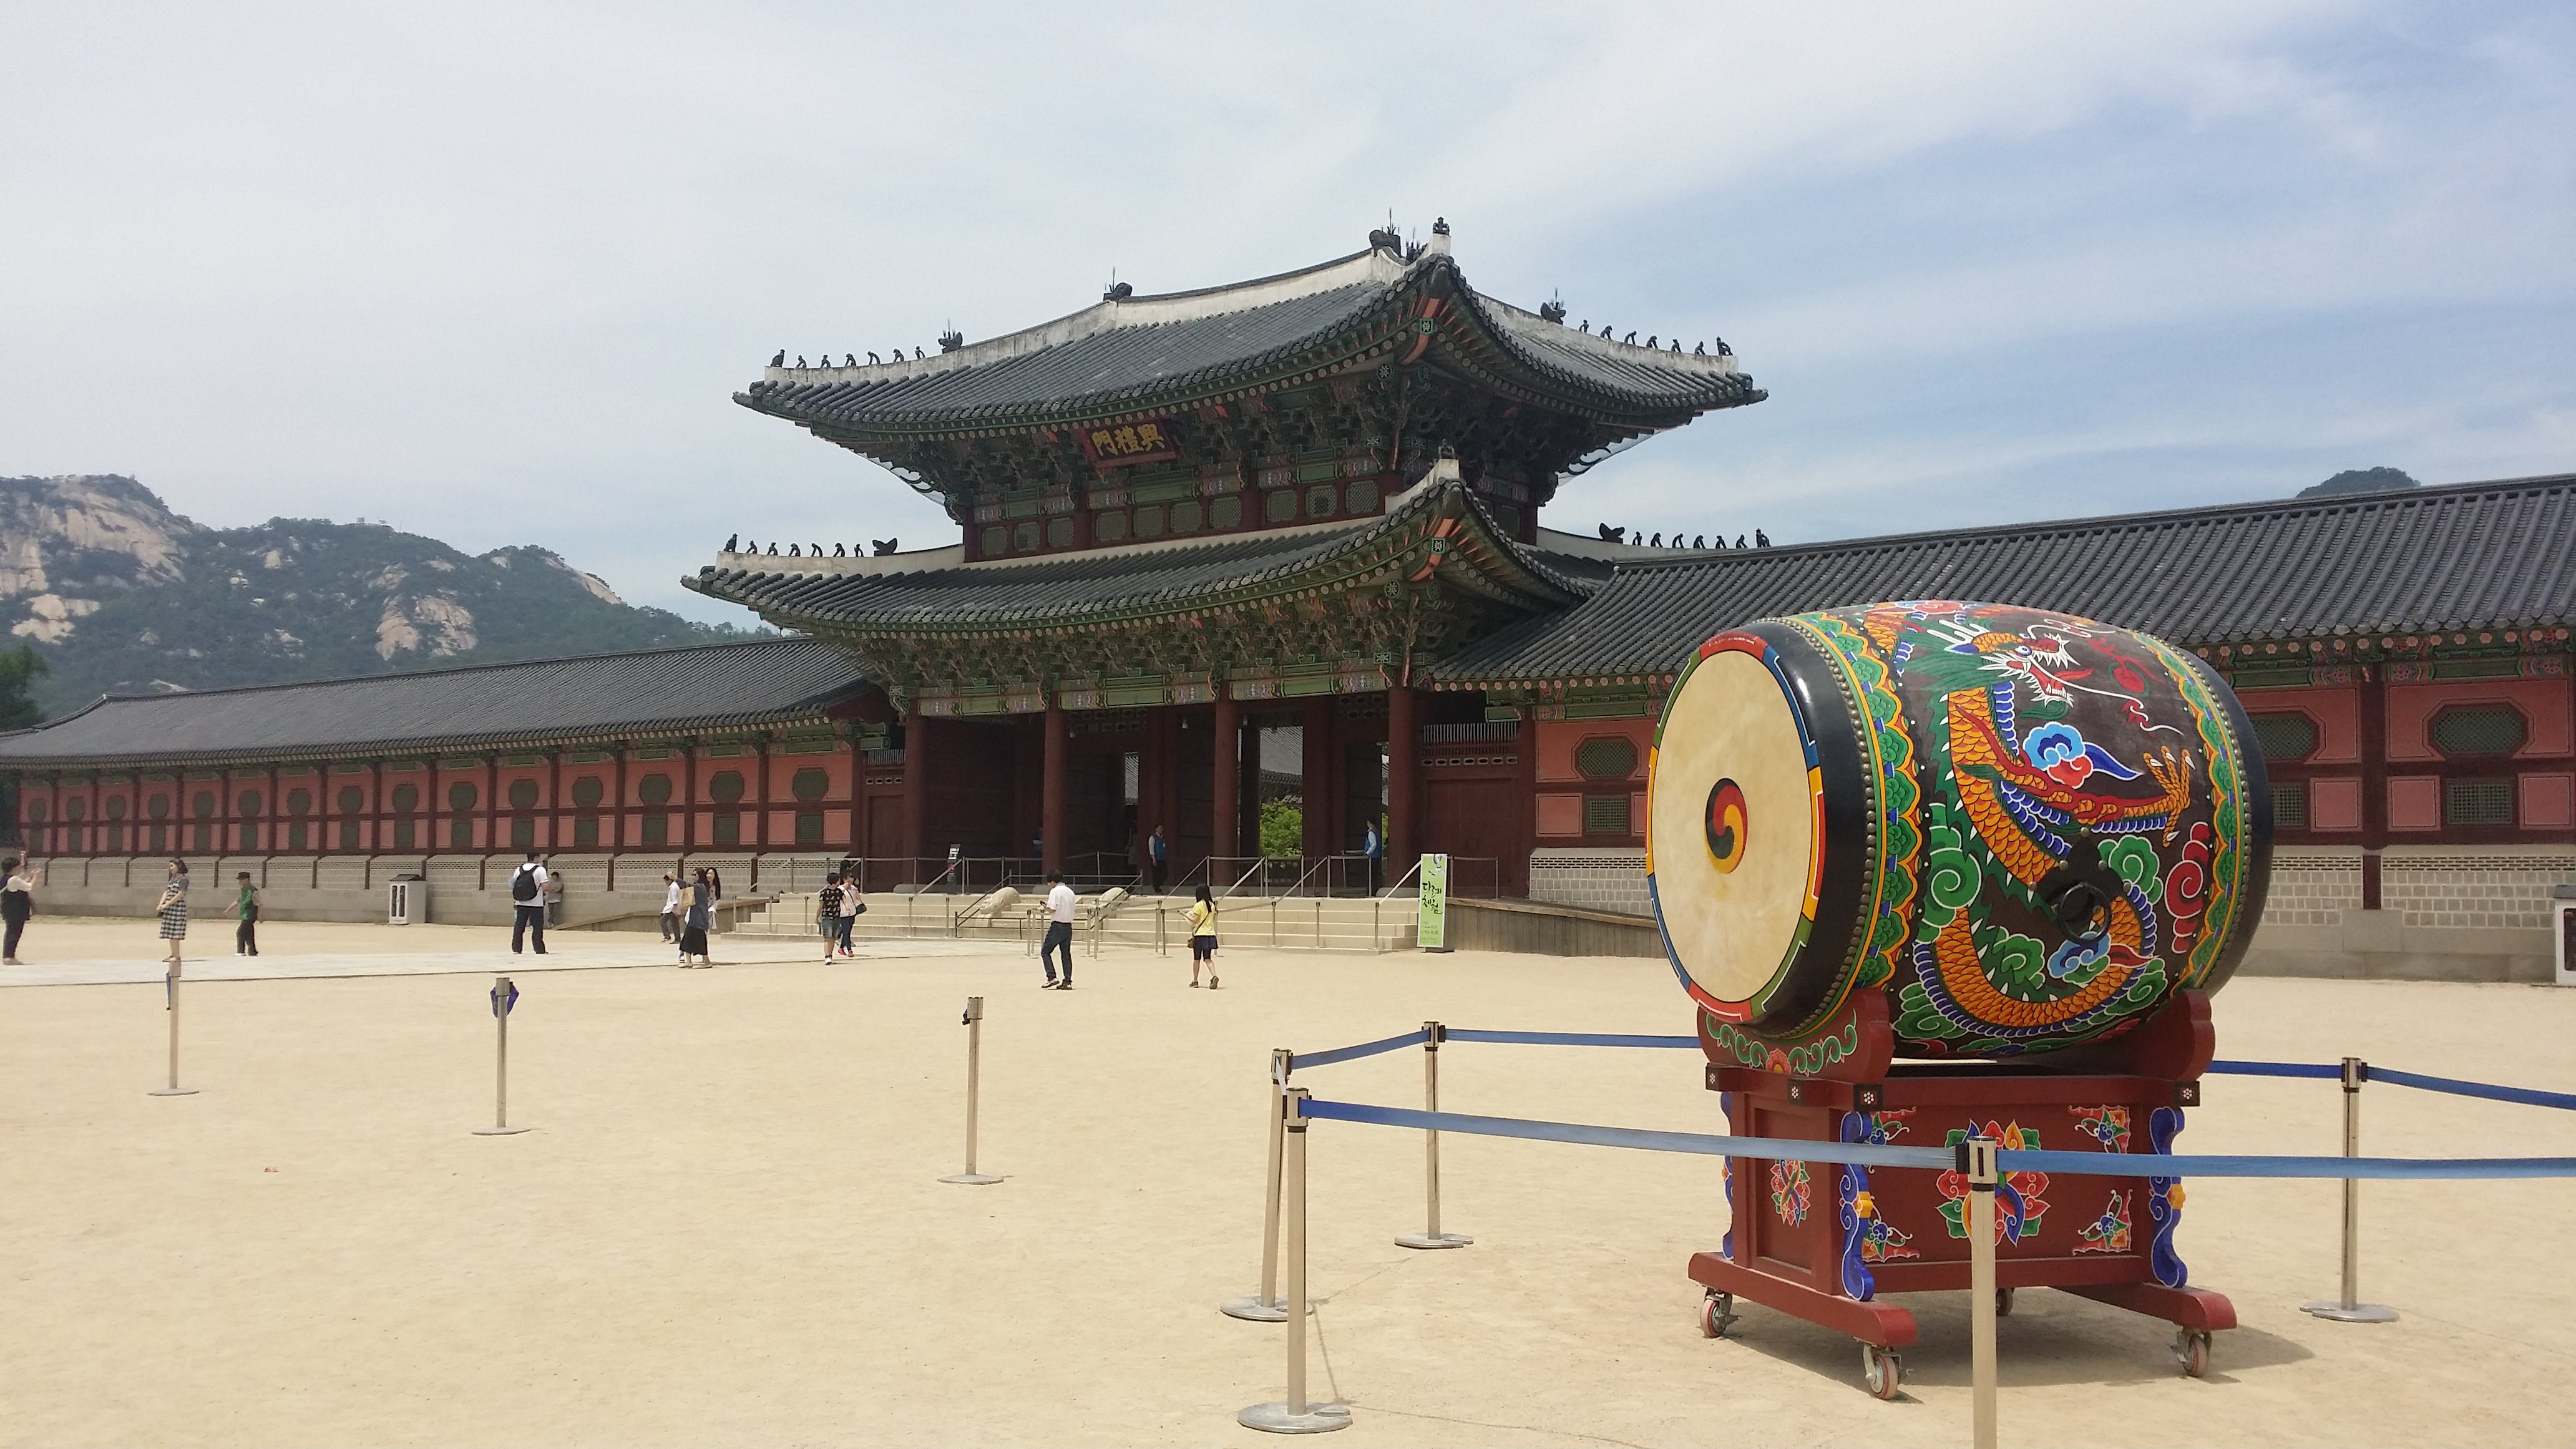 韩国著名景点,是韩国首尔规模最大,最古老的宫殿之一